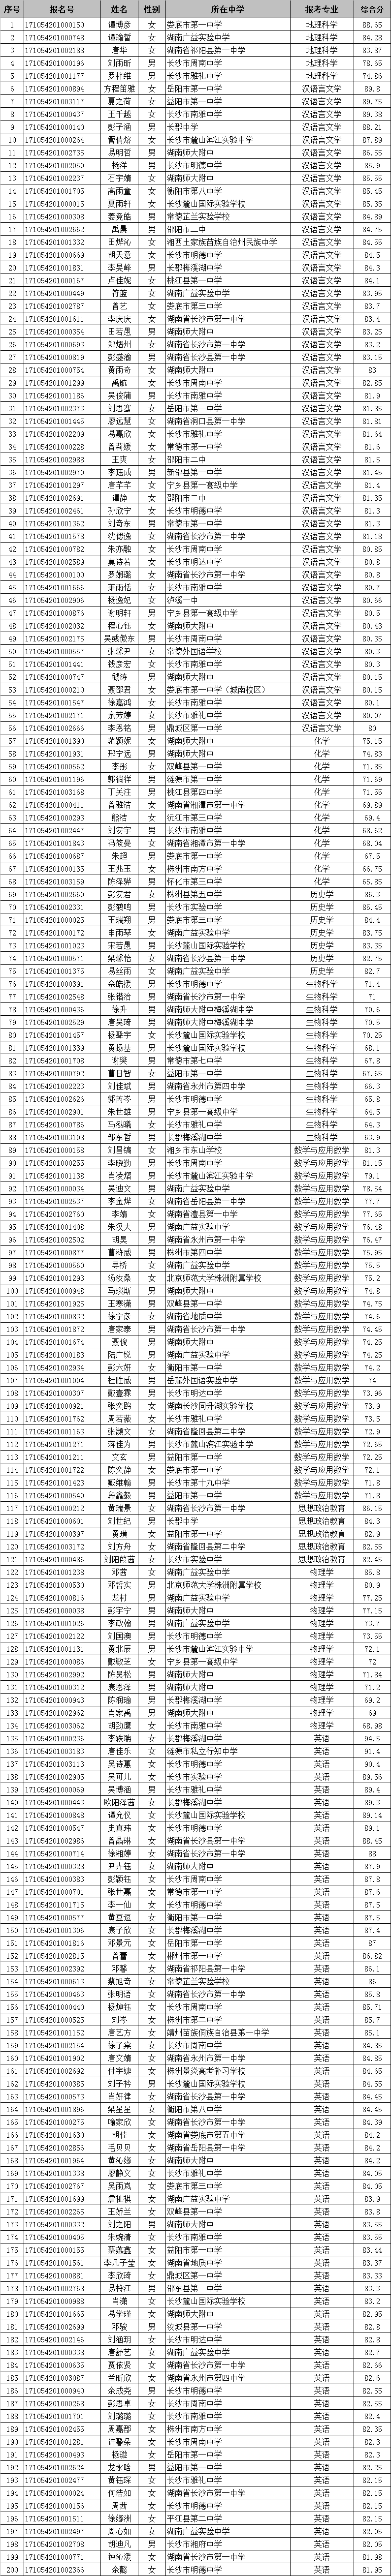 湖南师范大学2017年自主招生入选名单公示